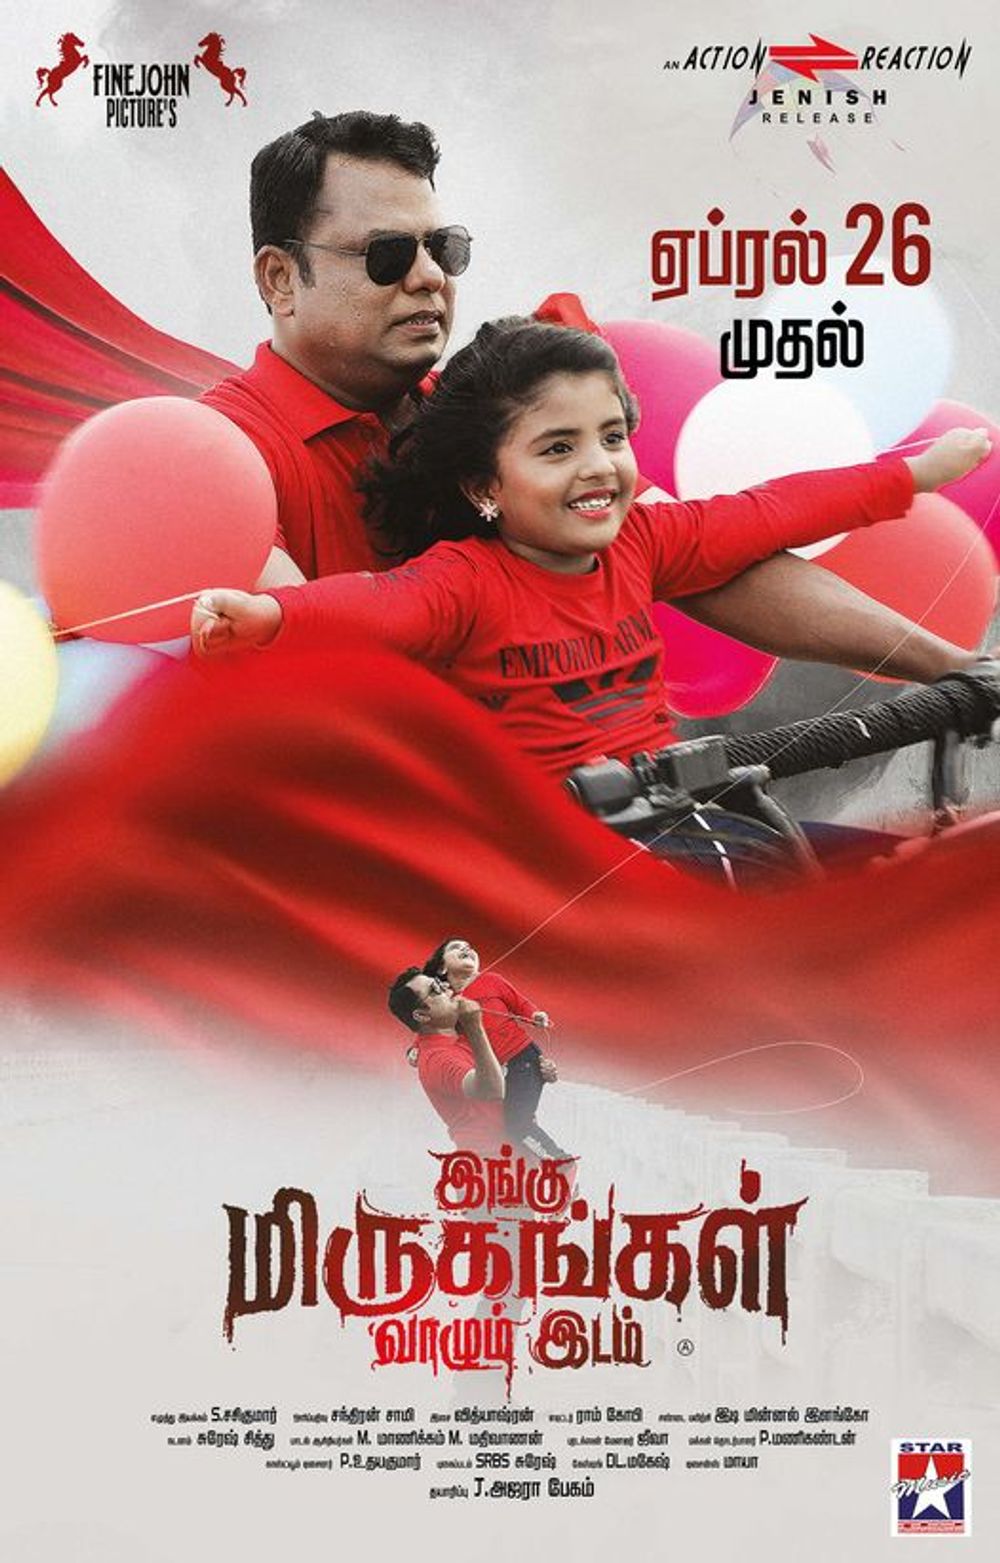 rendagam movie review tamil